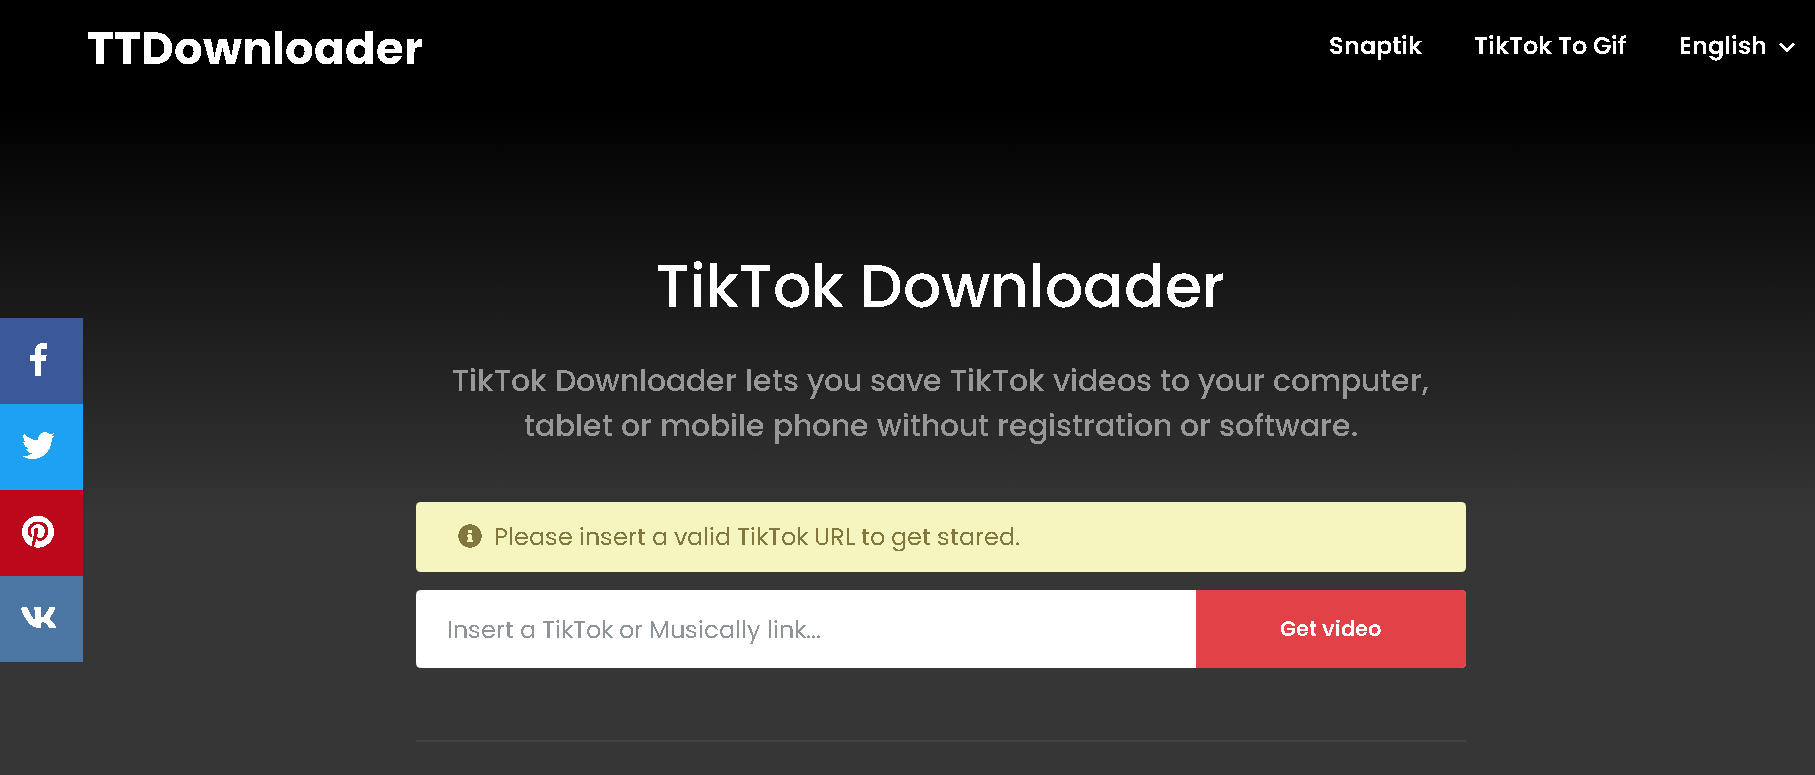 TT Downloader for Tiktok